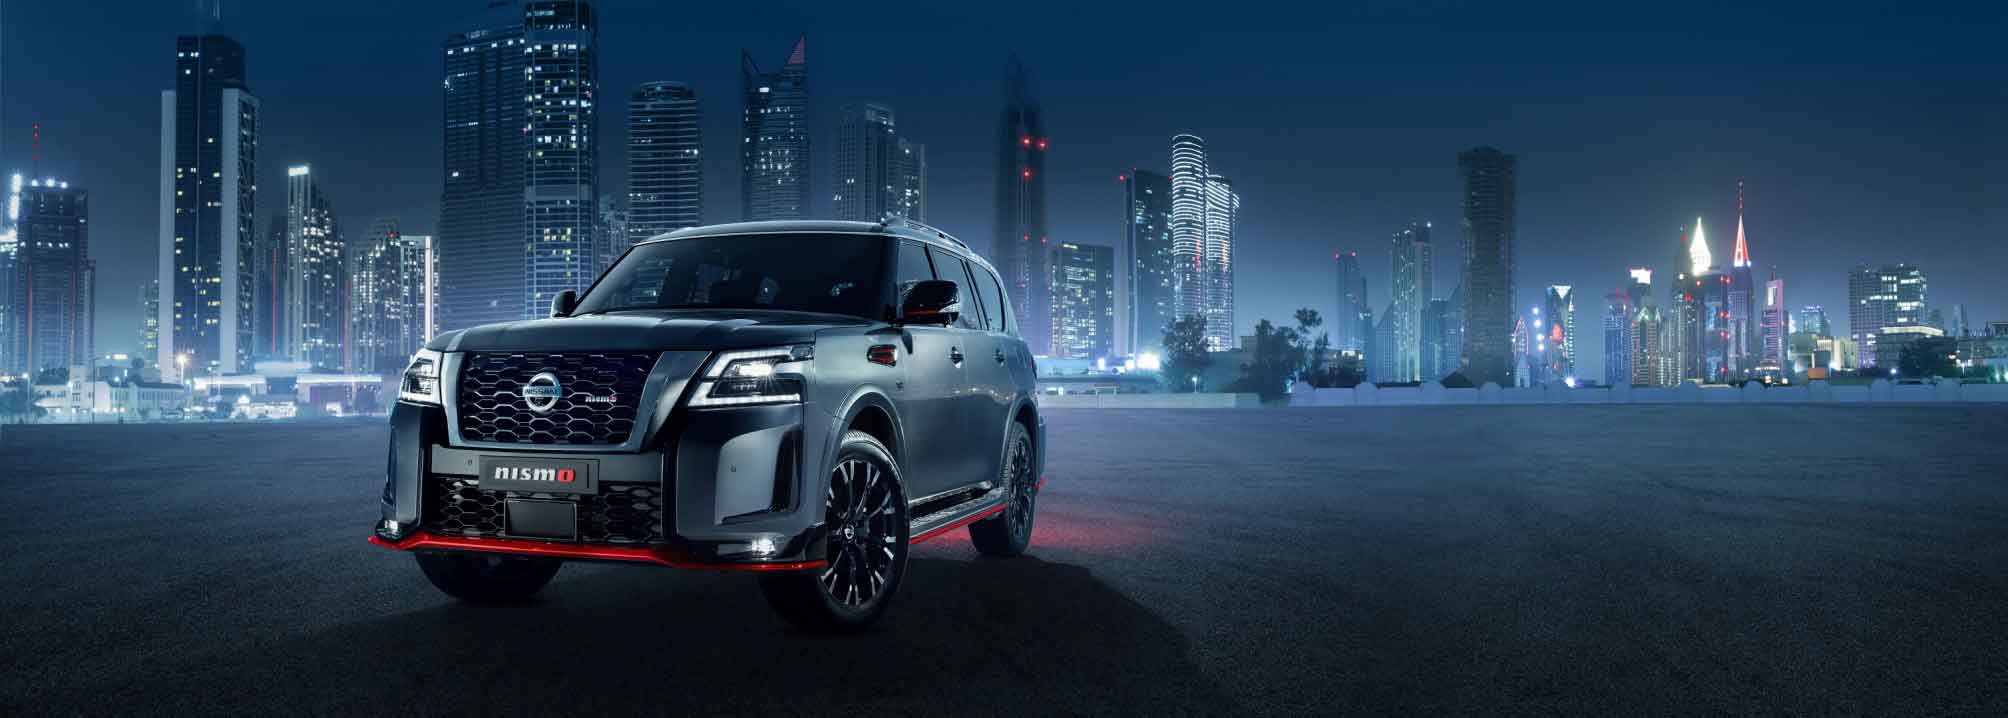 Nissan Patrol Nismo makes global debut 